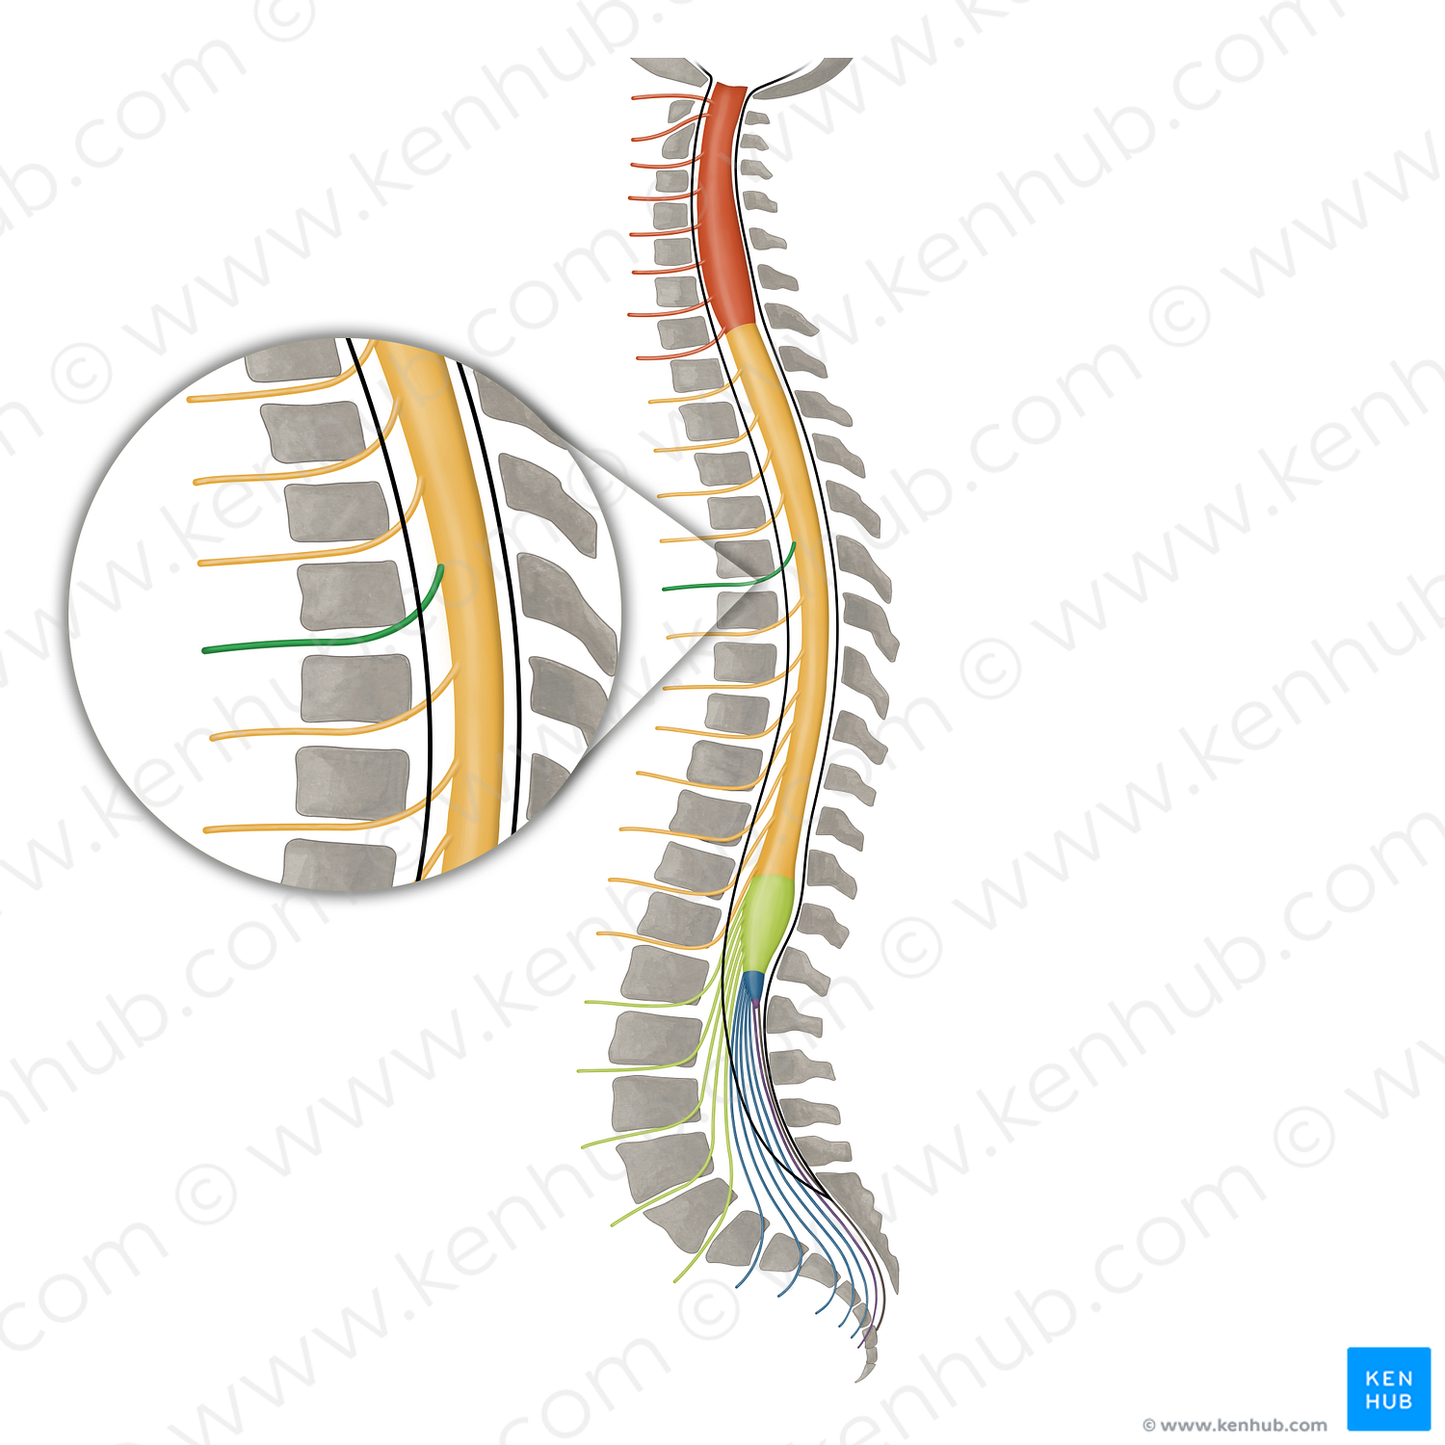 Spinal nerve T5 (#16151)